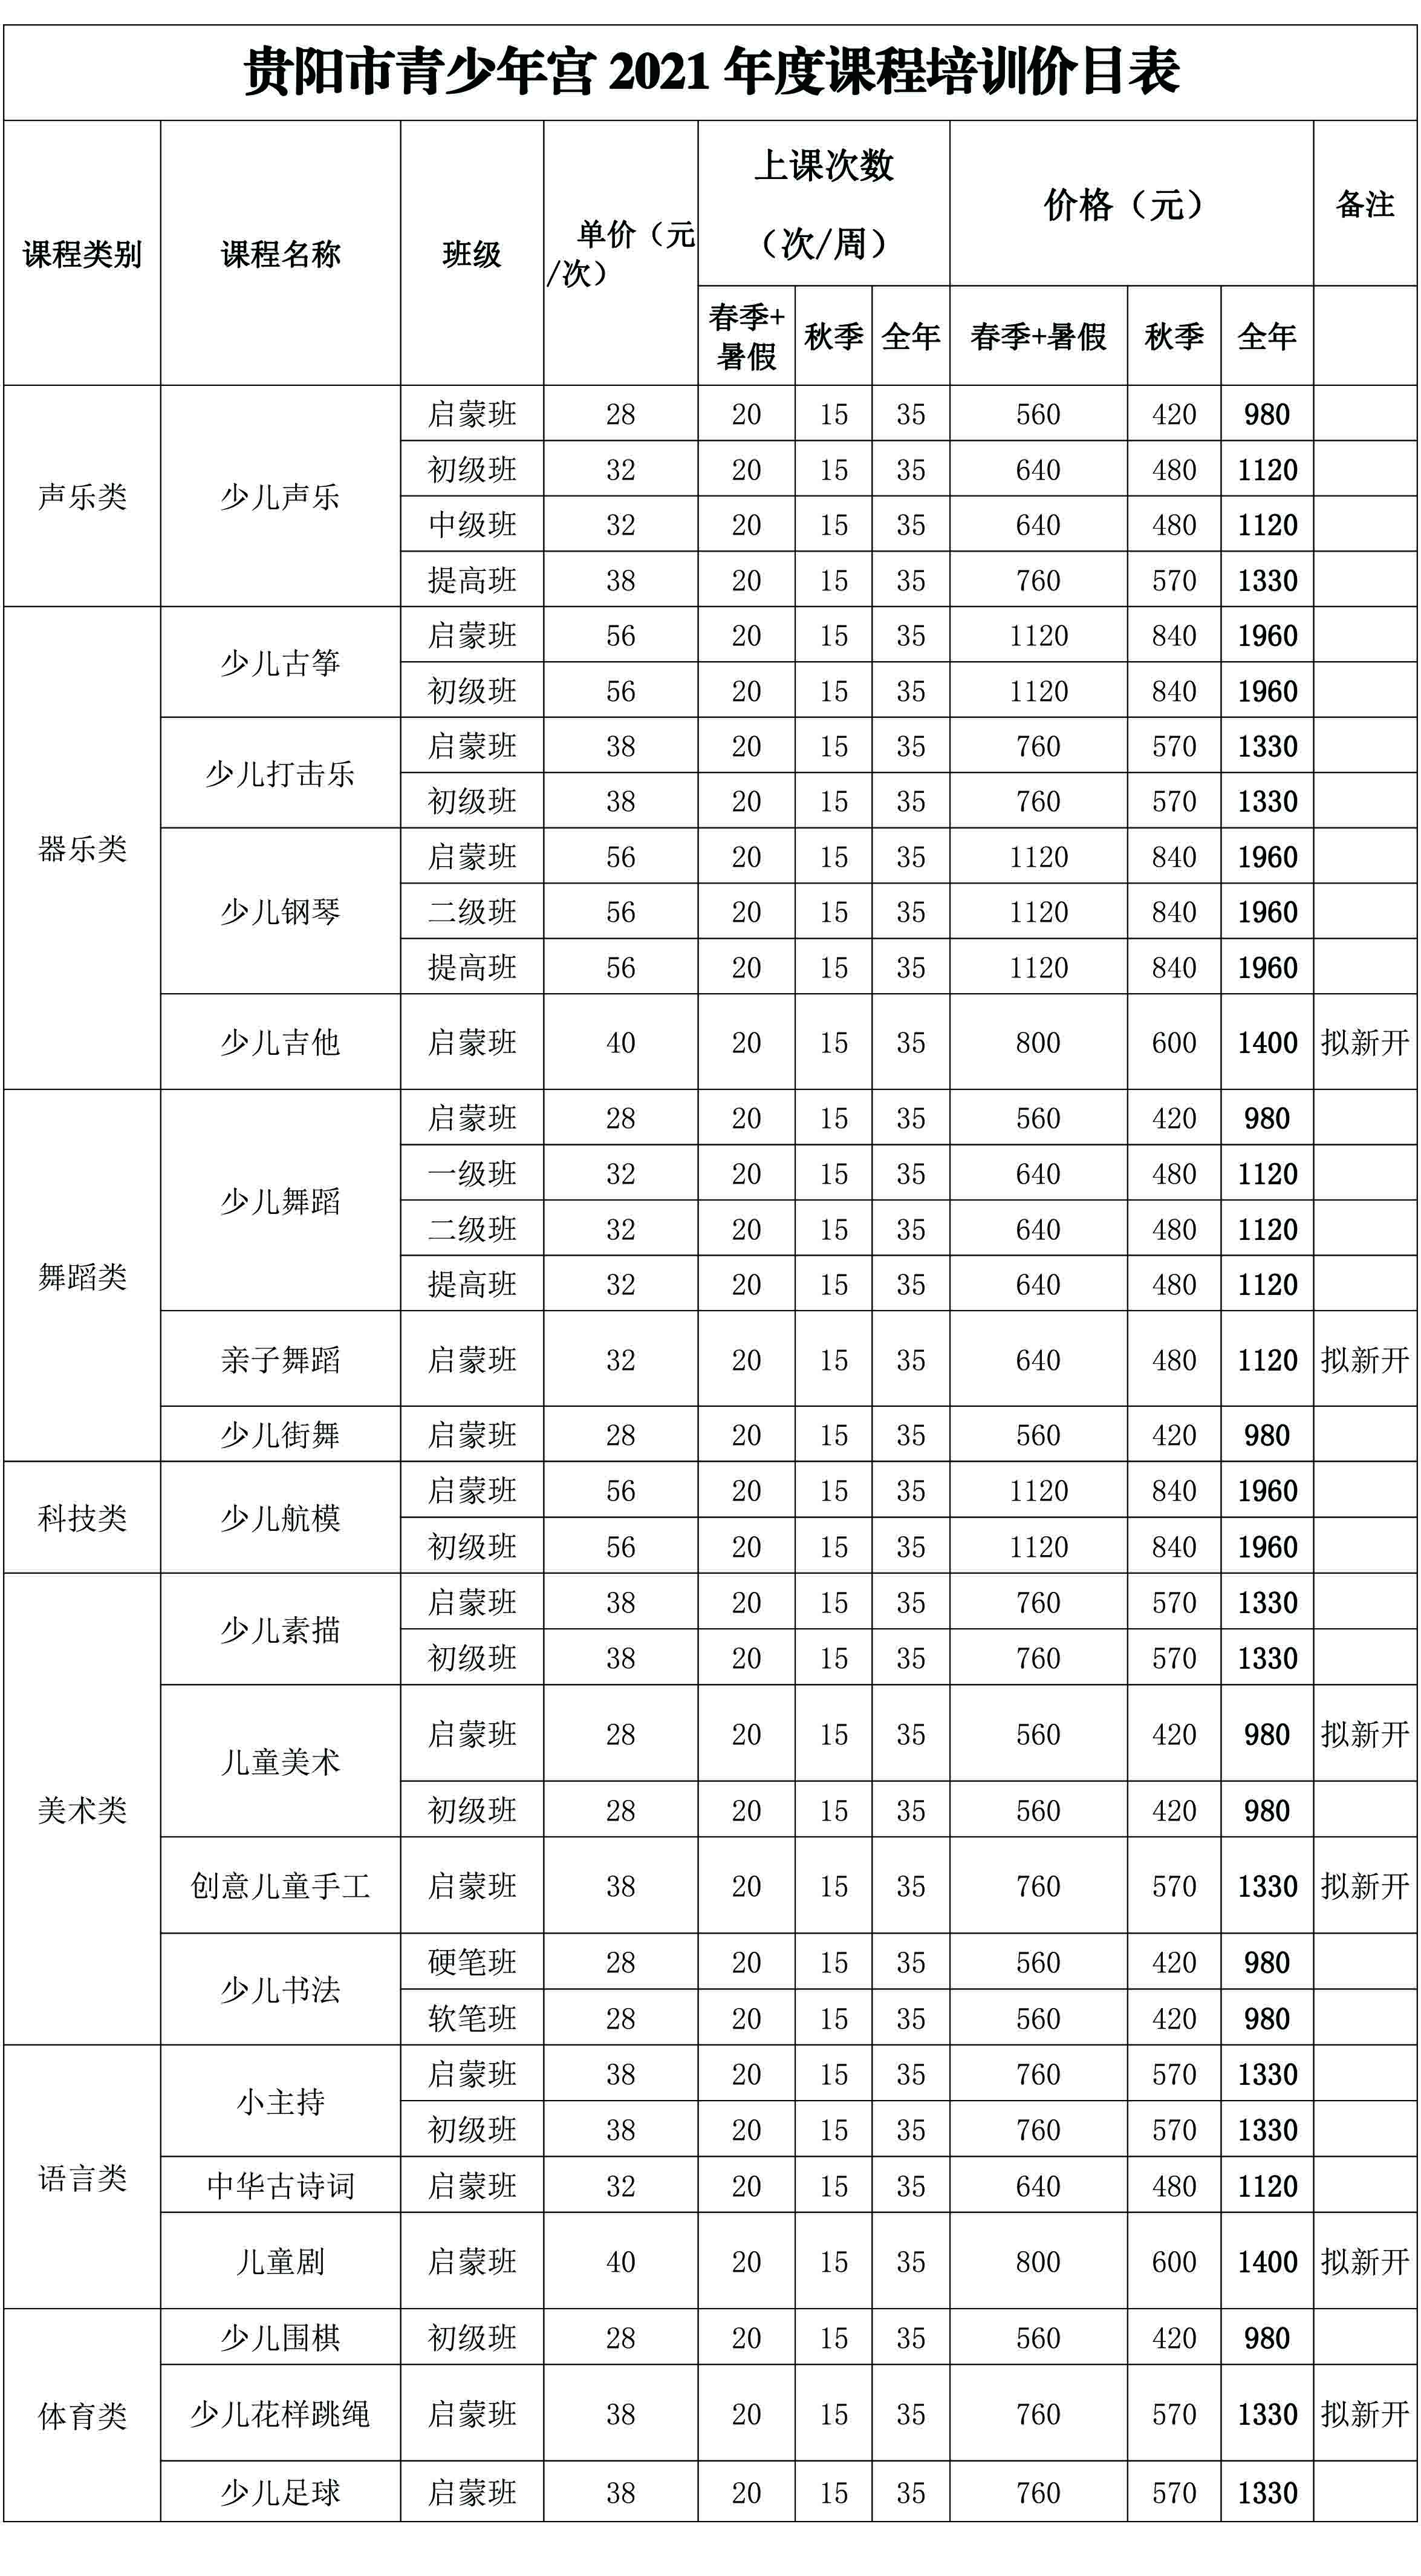 贵阳市青少年宫关于2021年度青少年综合素质教育培训收费价格的公示-2.jpg